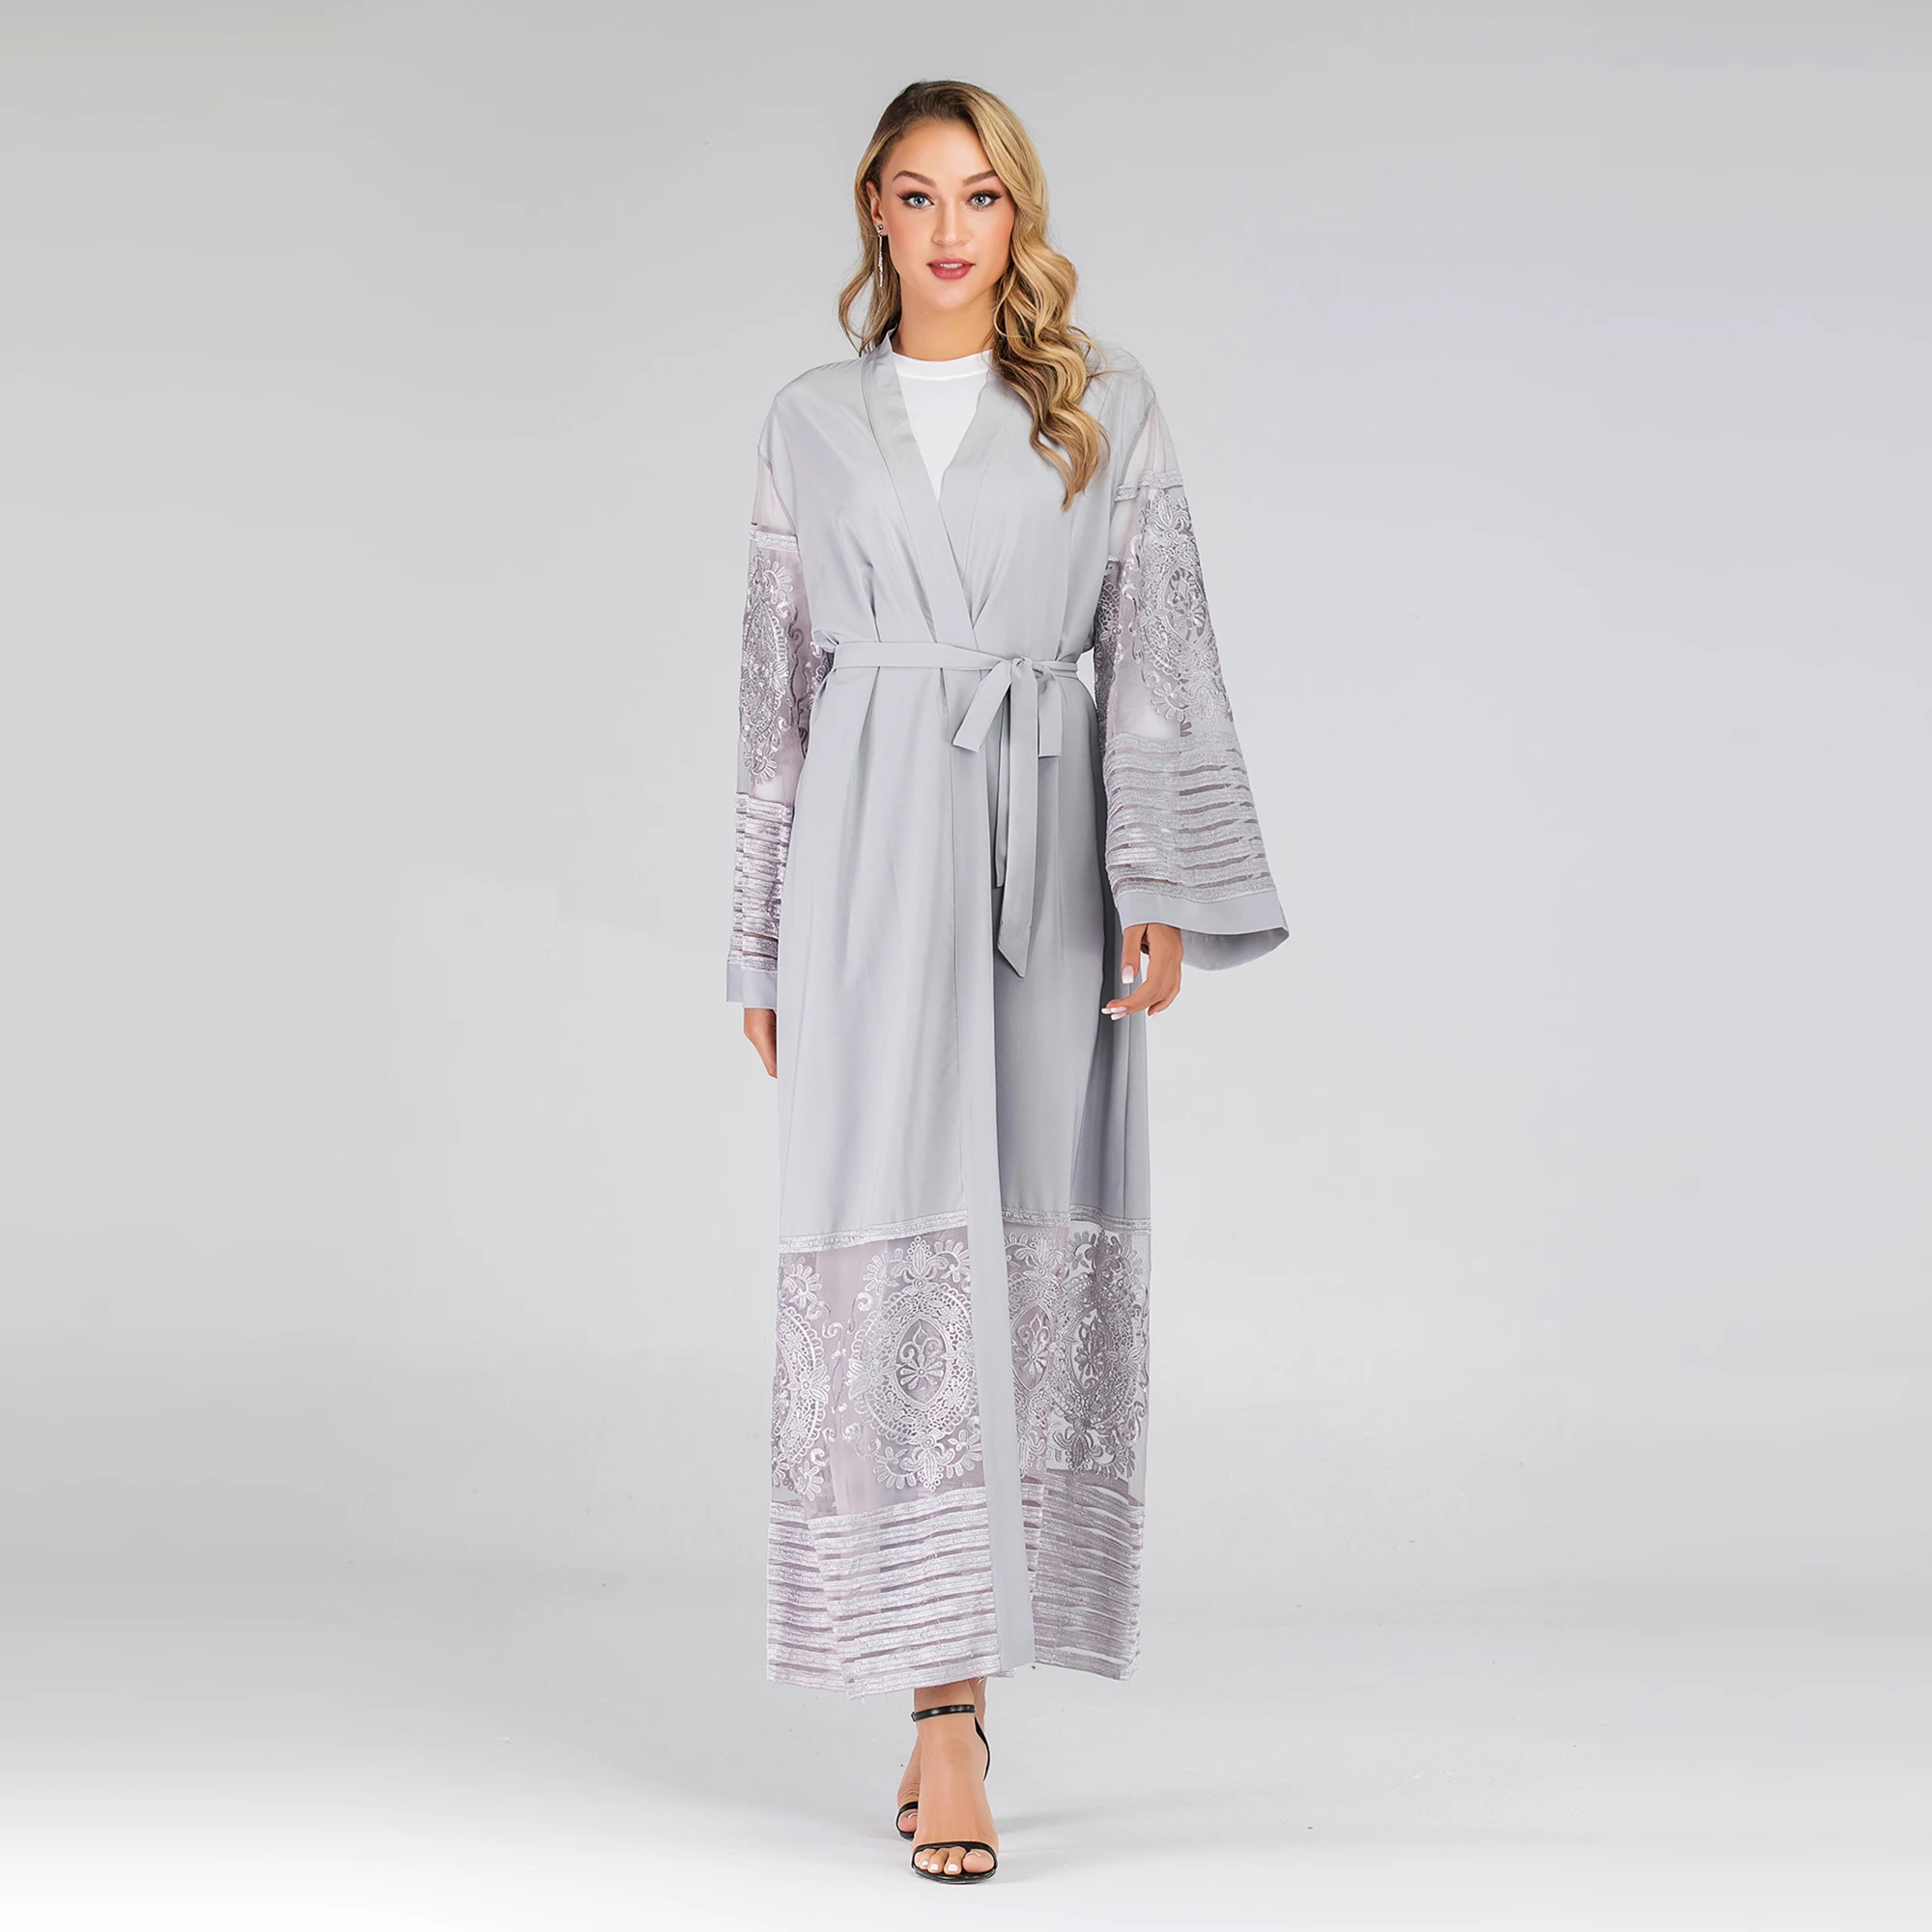 1546 Muslimah Fashion Baju  Kurung 2021 New Model Abaya  In 